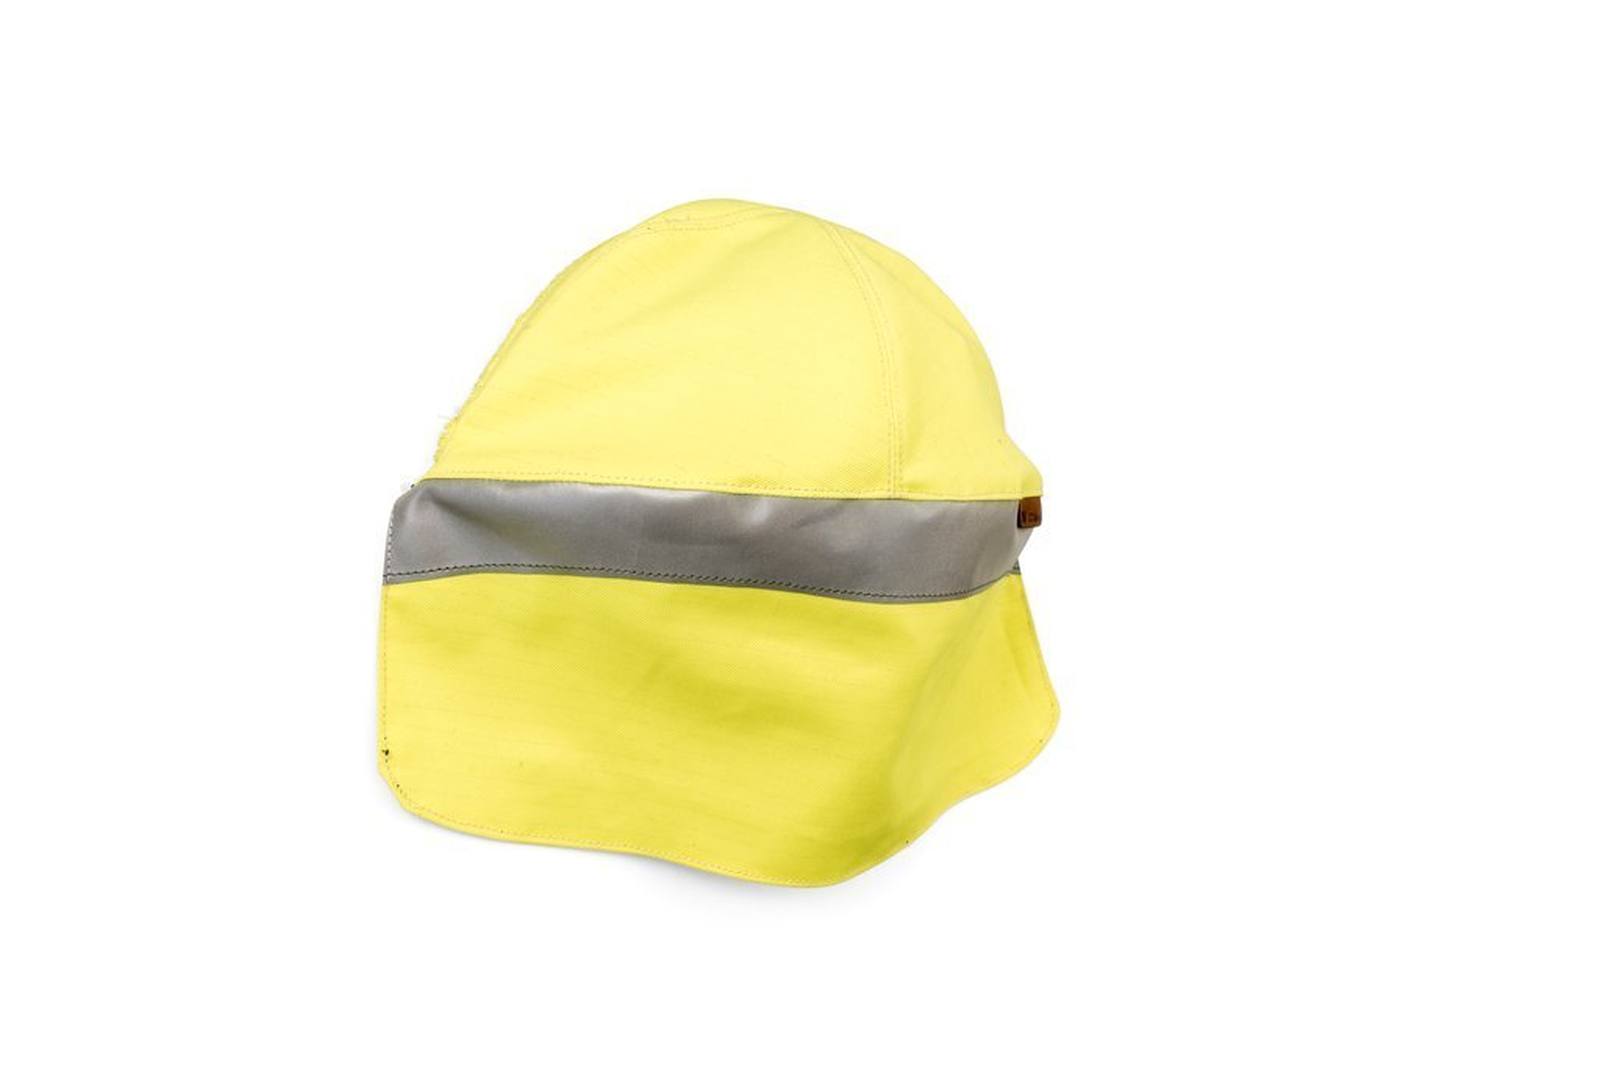 3M fluoreszierend-gelber Kopfschutz aus Stoff für 3M Speedglas Hochleistungs-Schweißmaske G5-01, H169021